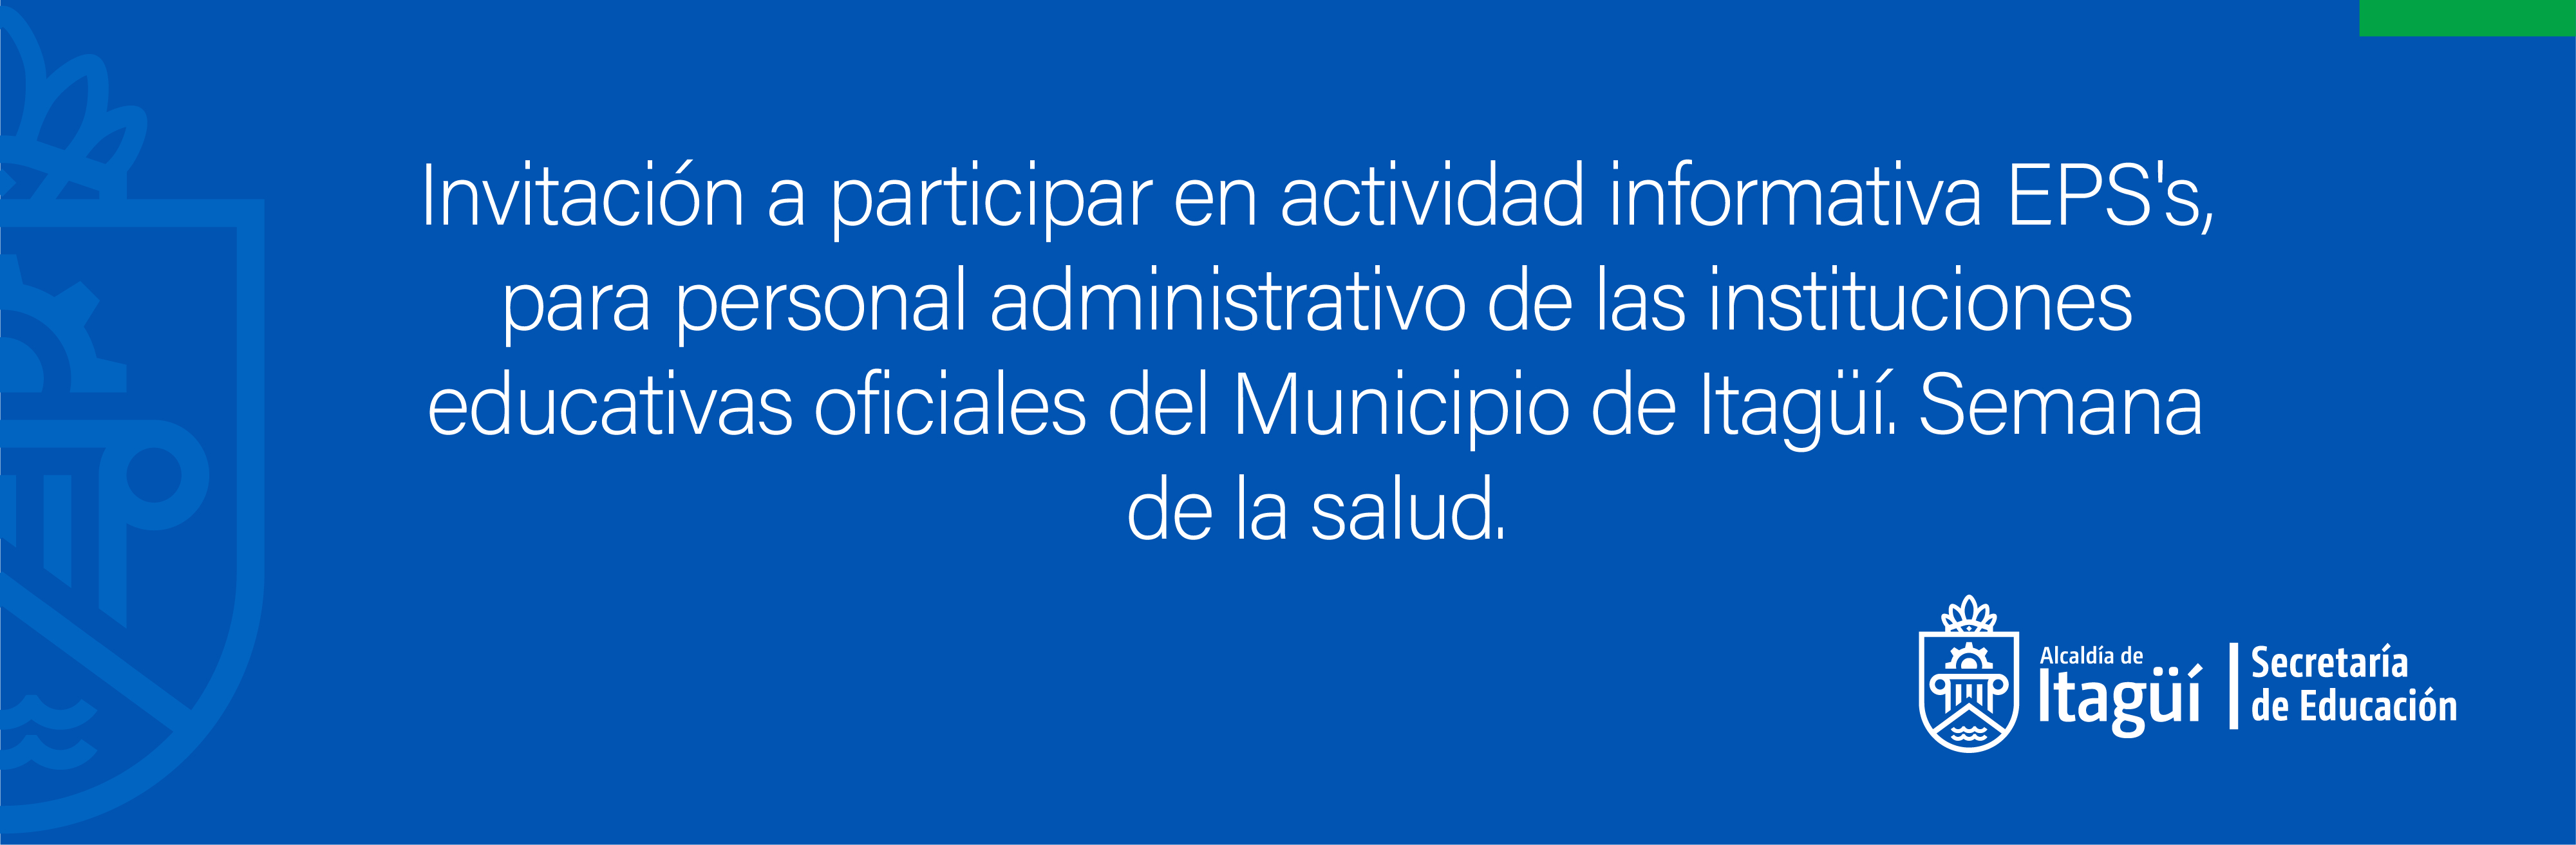 Invitación a participar en actividad informativa EPS, para personal administrativo de las instituciones educativas oficiales del Municipio de Itagüí. Semana de la salud.